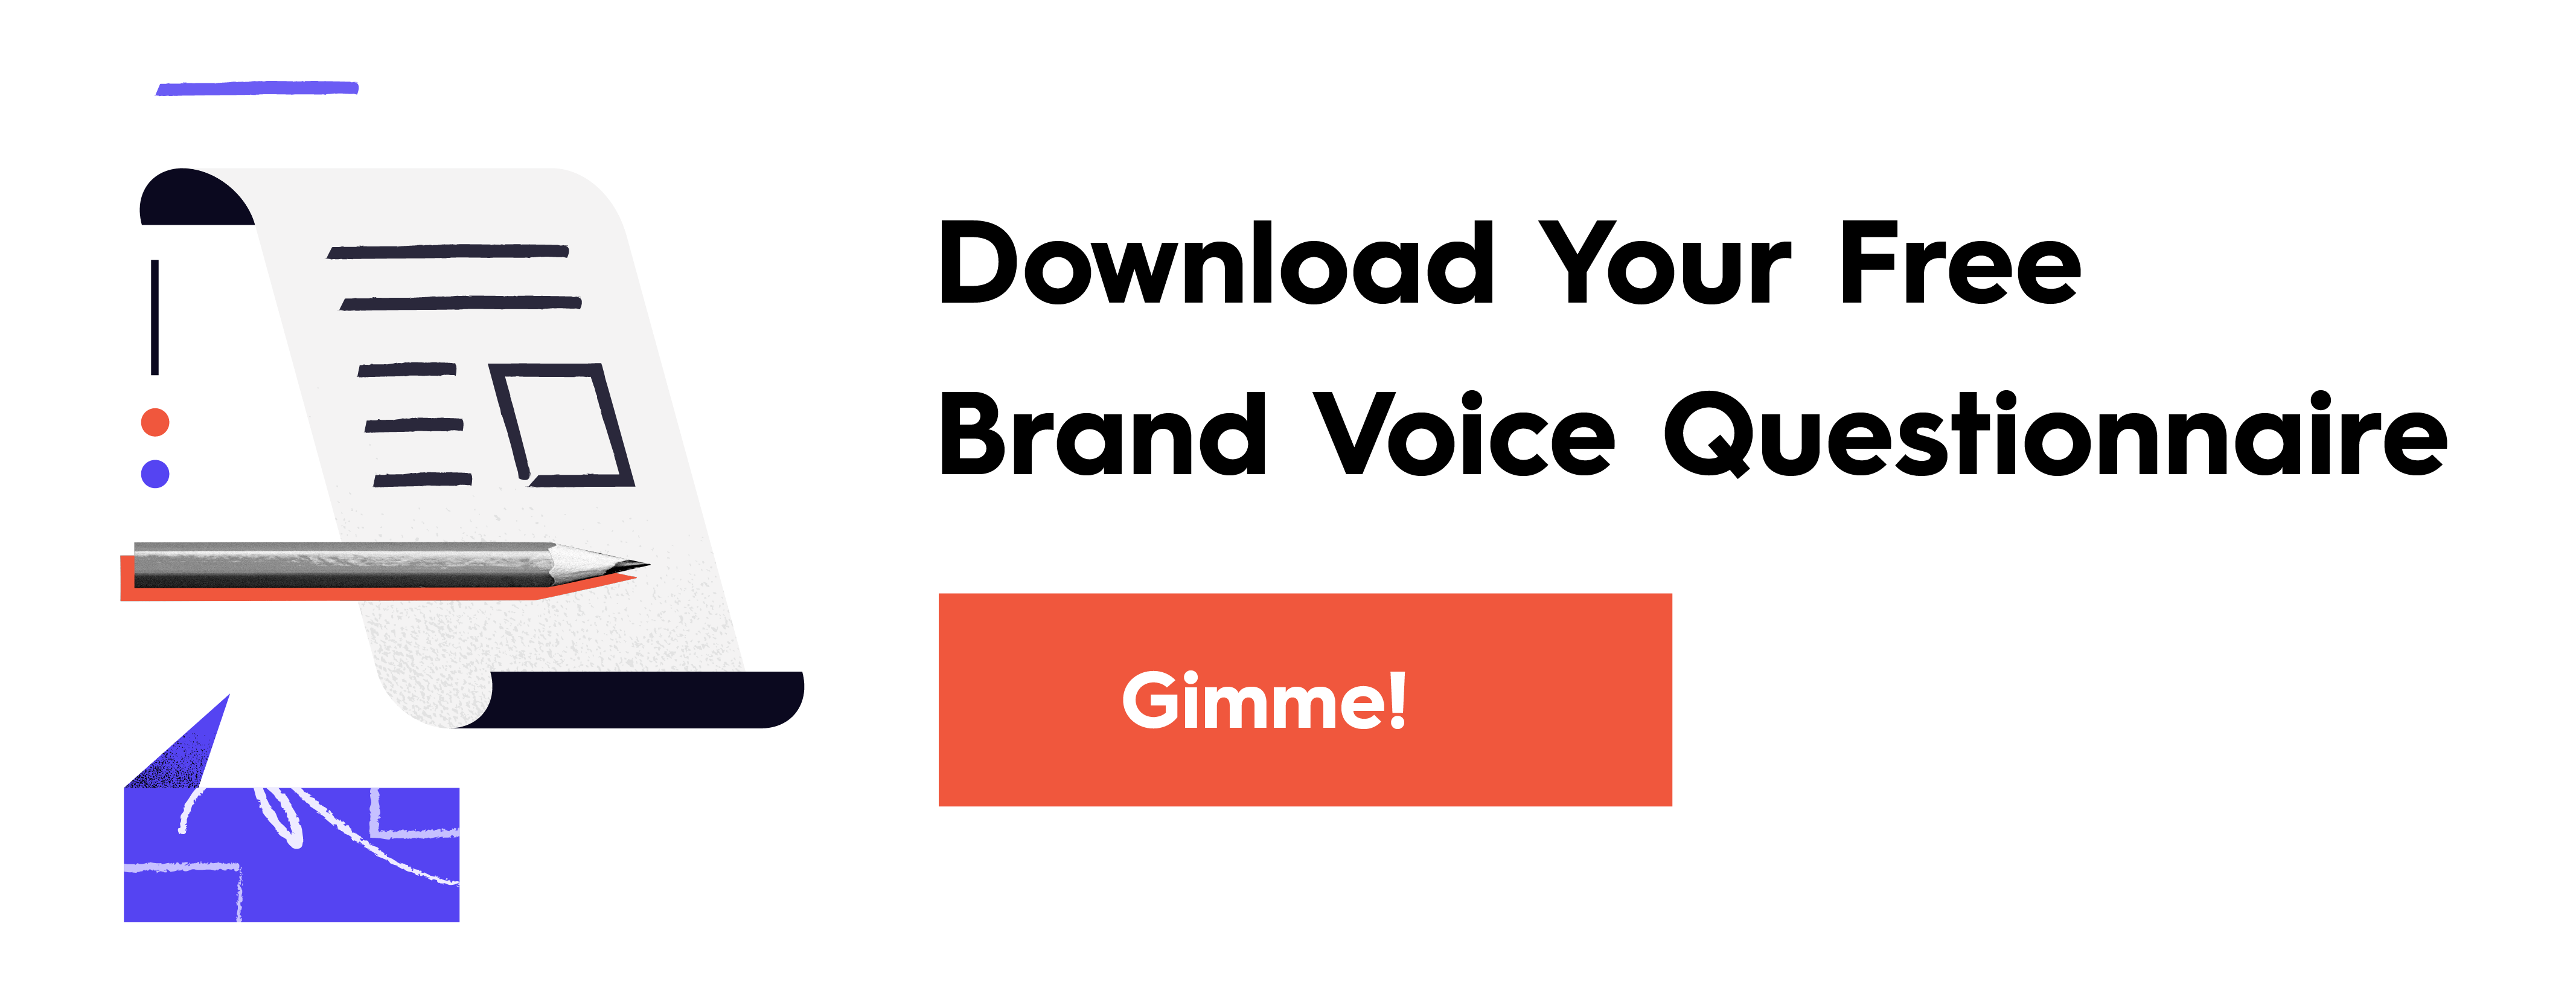 Brand Voice Questionnaire CTA-18